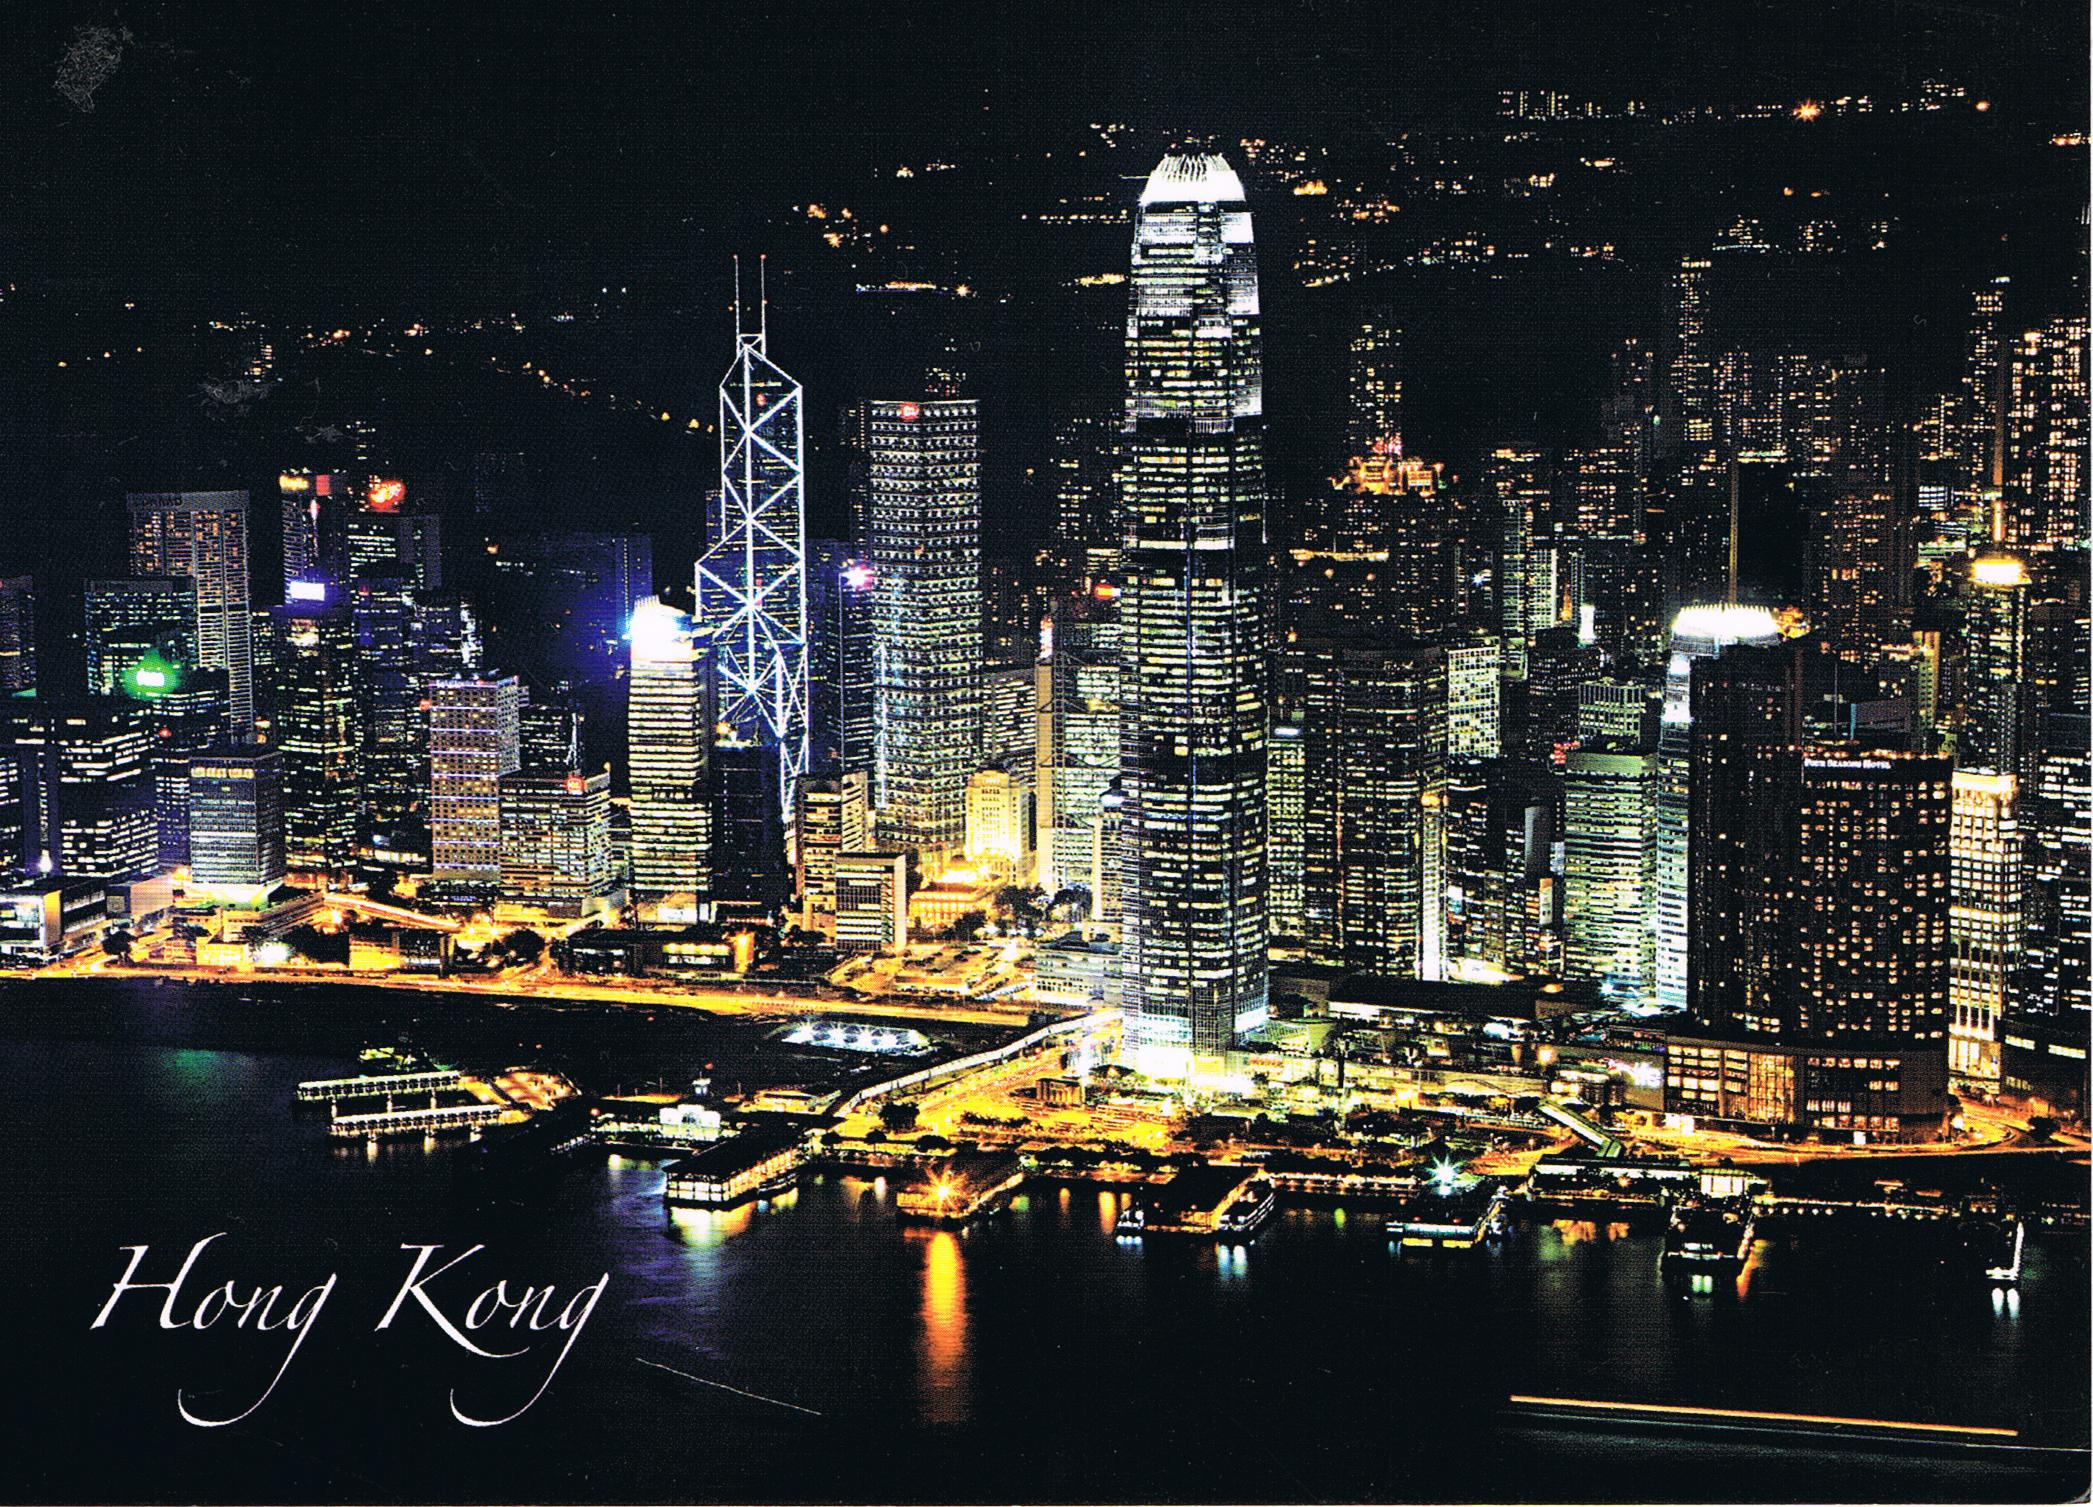 Die Skyline von Hongkong